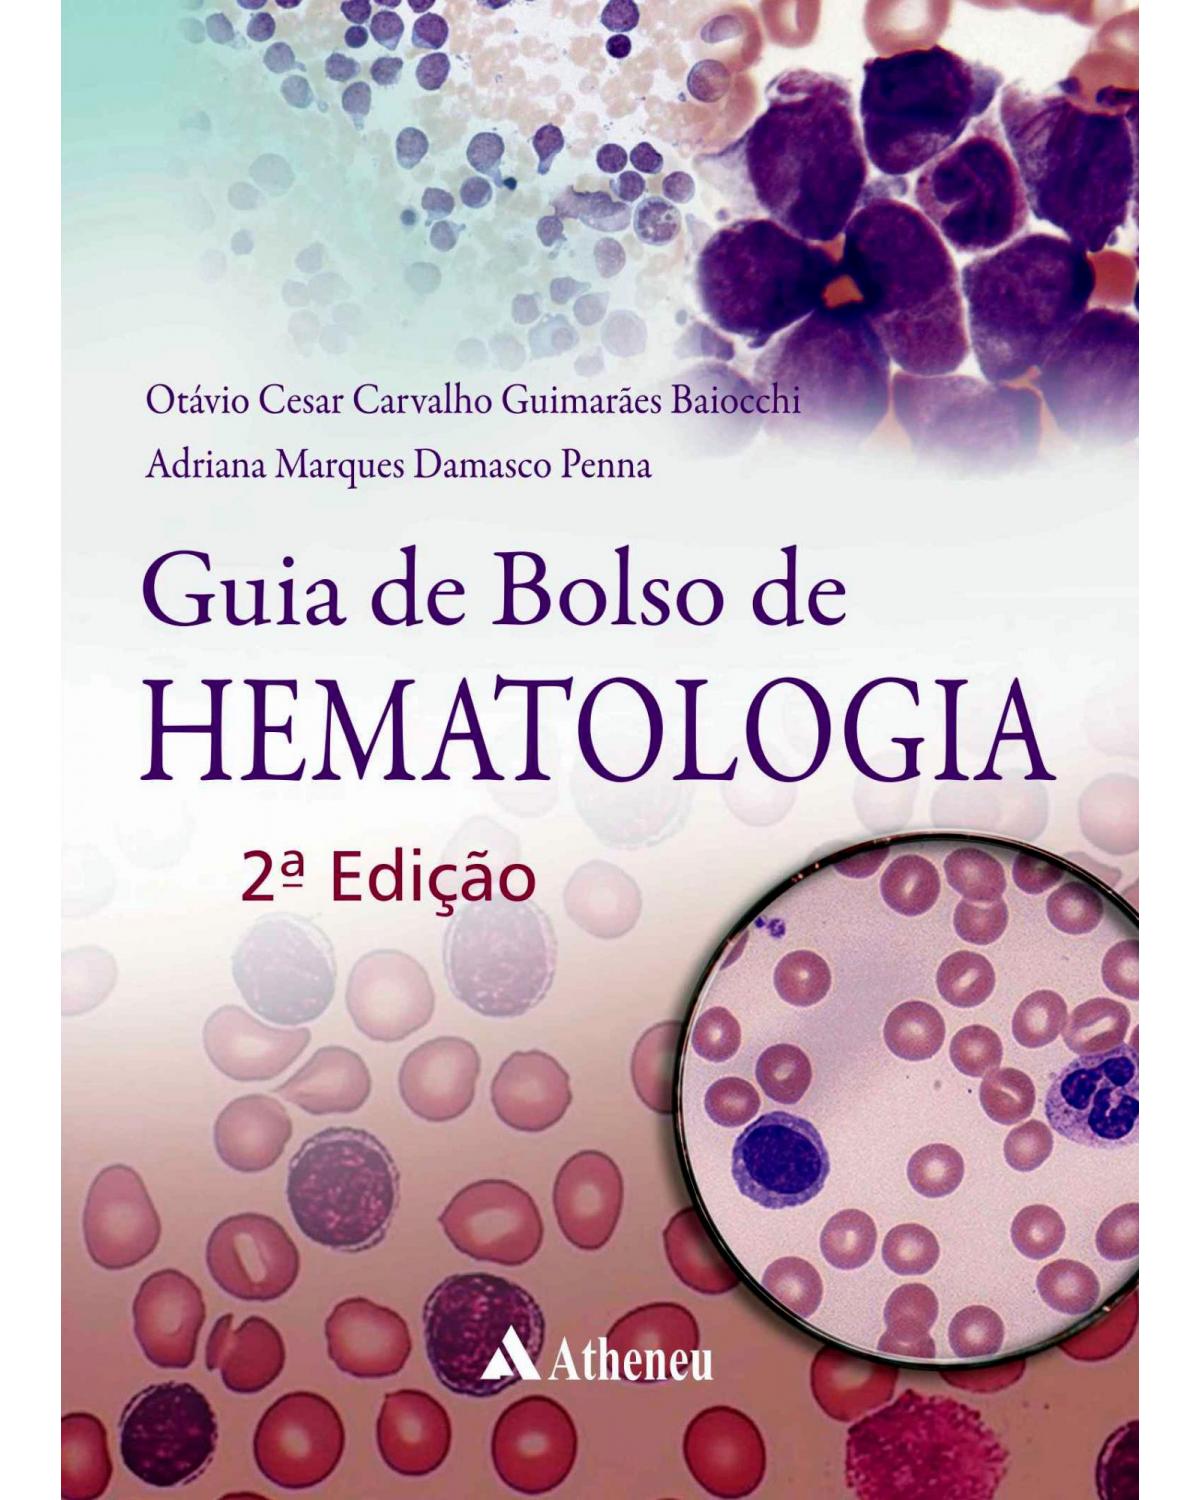 Guia de bolso de hematologia - 2ª Edição | 2019